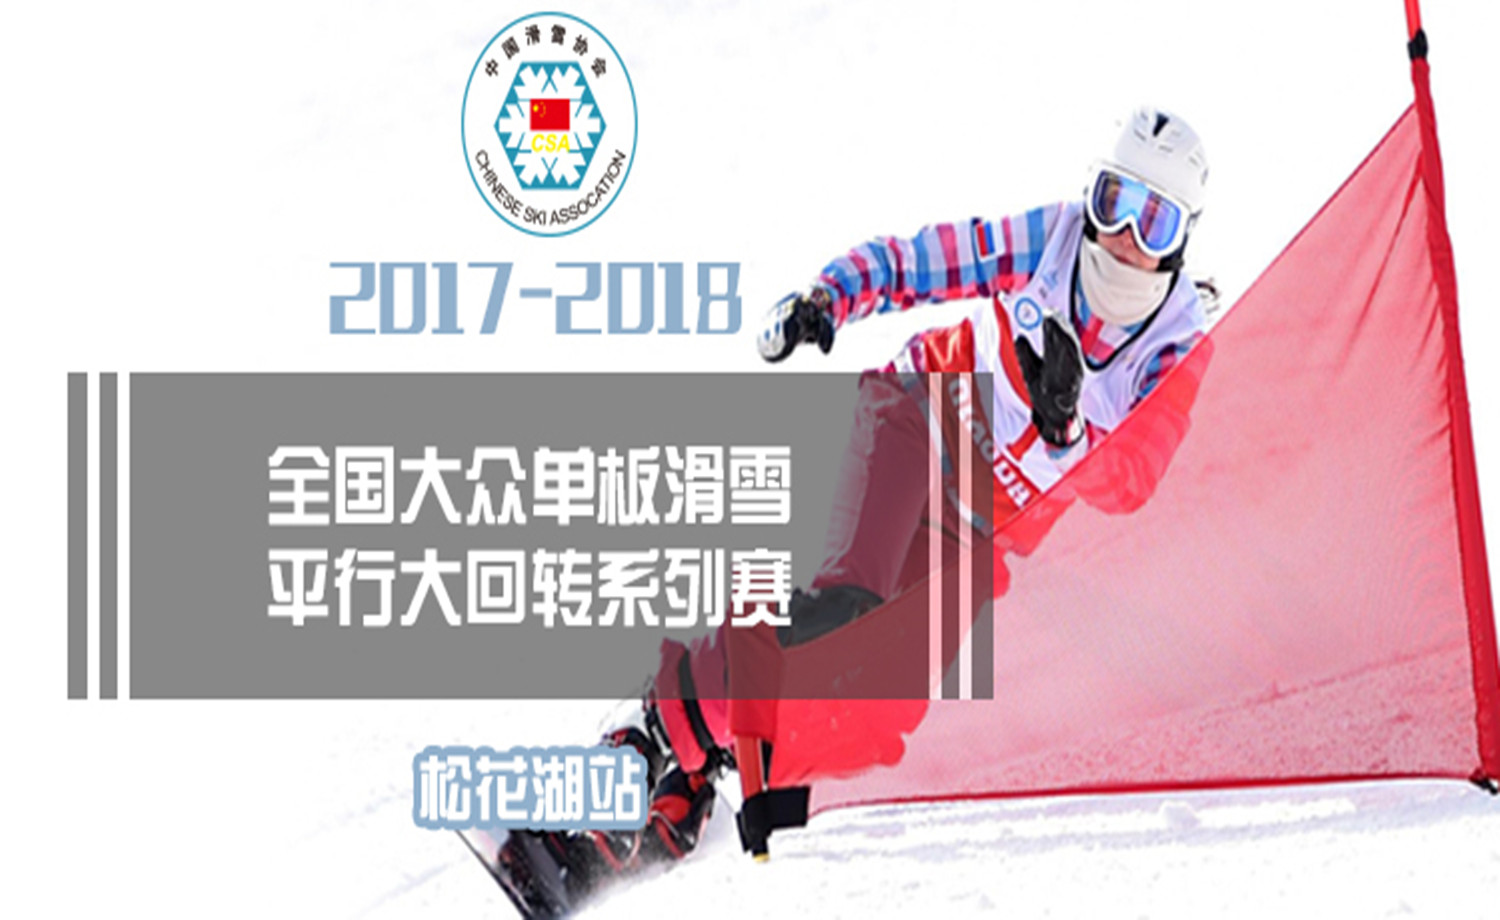 2017-2018年全国大众单板滑雪平行大回转系列-松花湖站